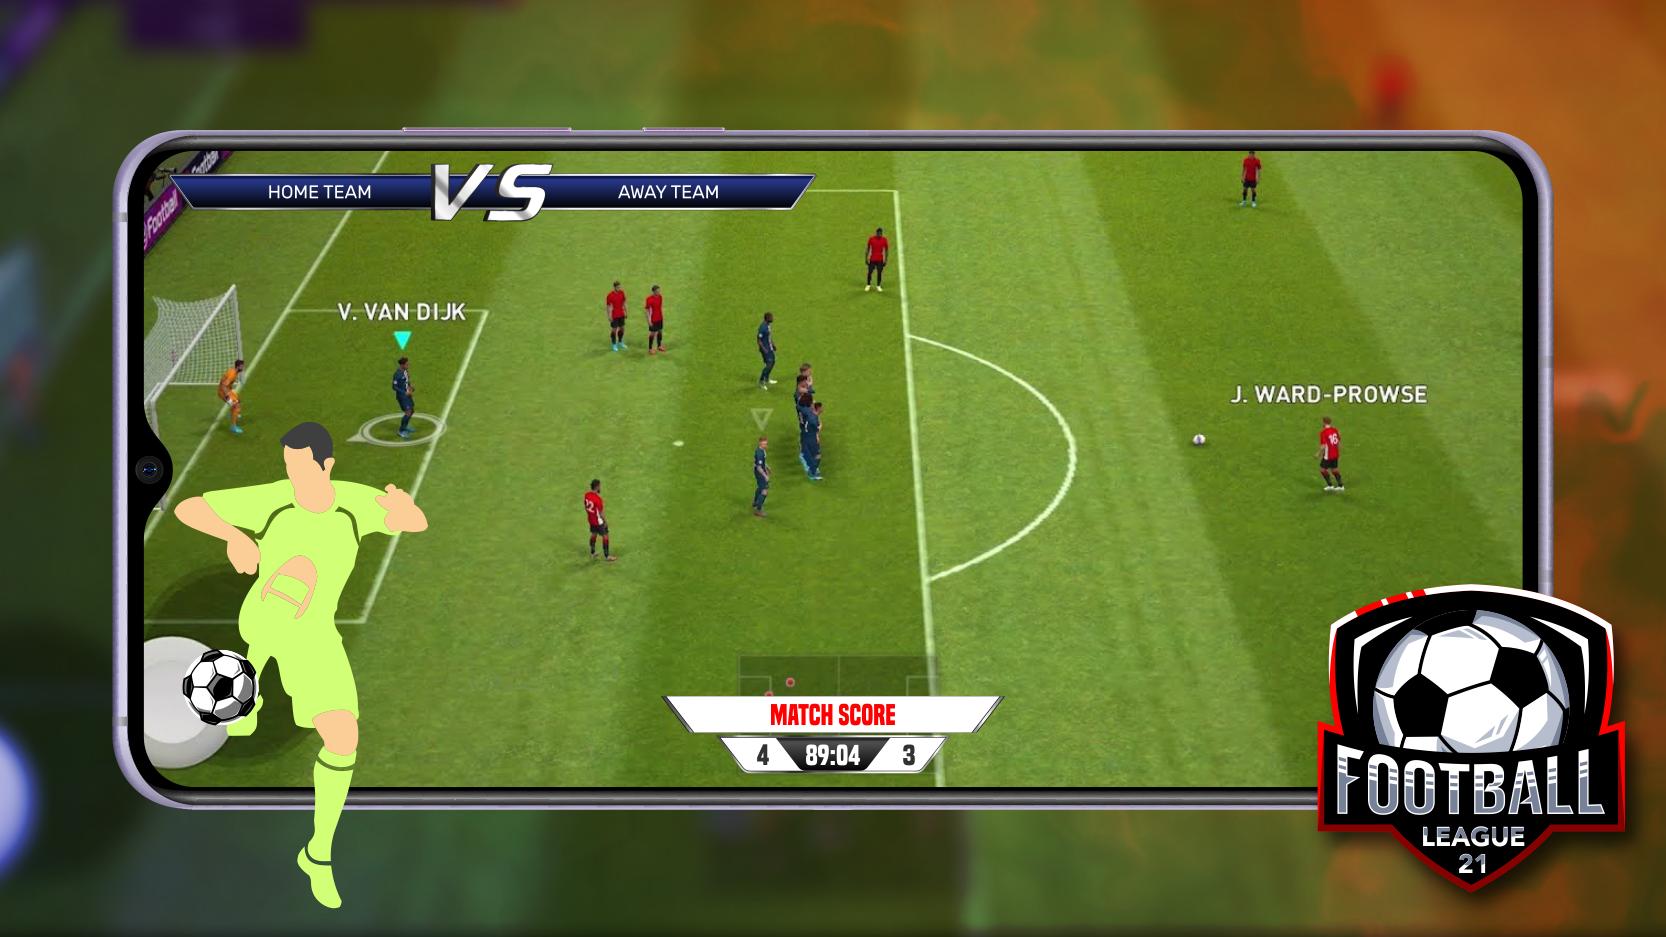 Football League 21 1.0 Screenshot 3